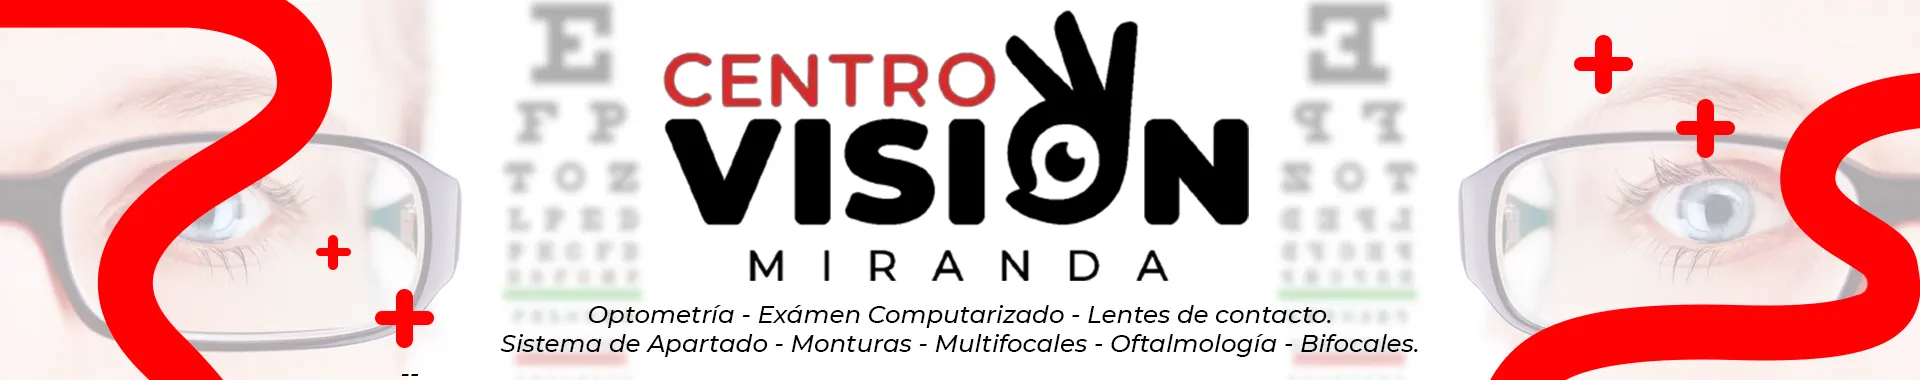 Imagen 1 del perfil de Centro Visión Miranda